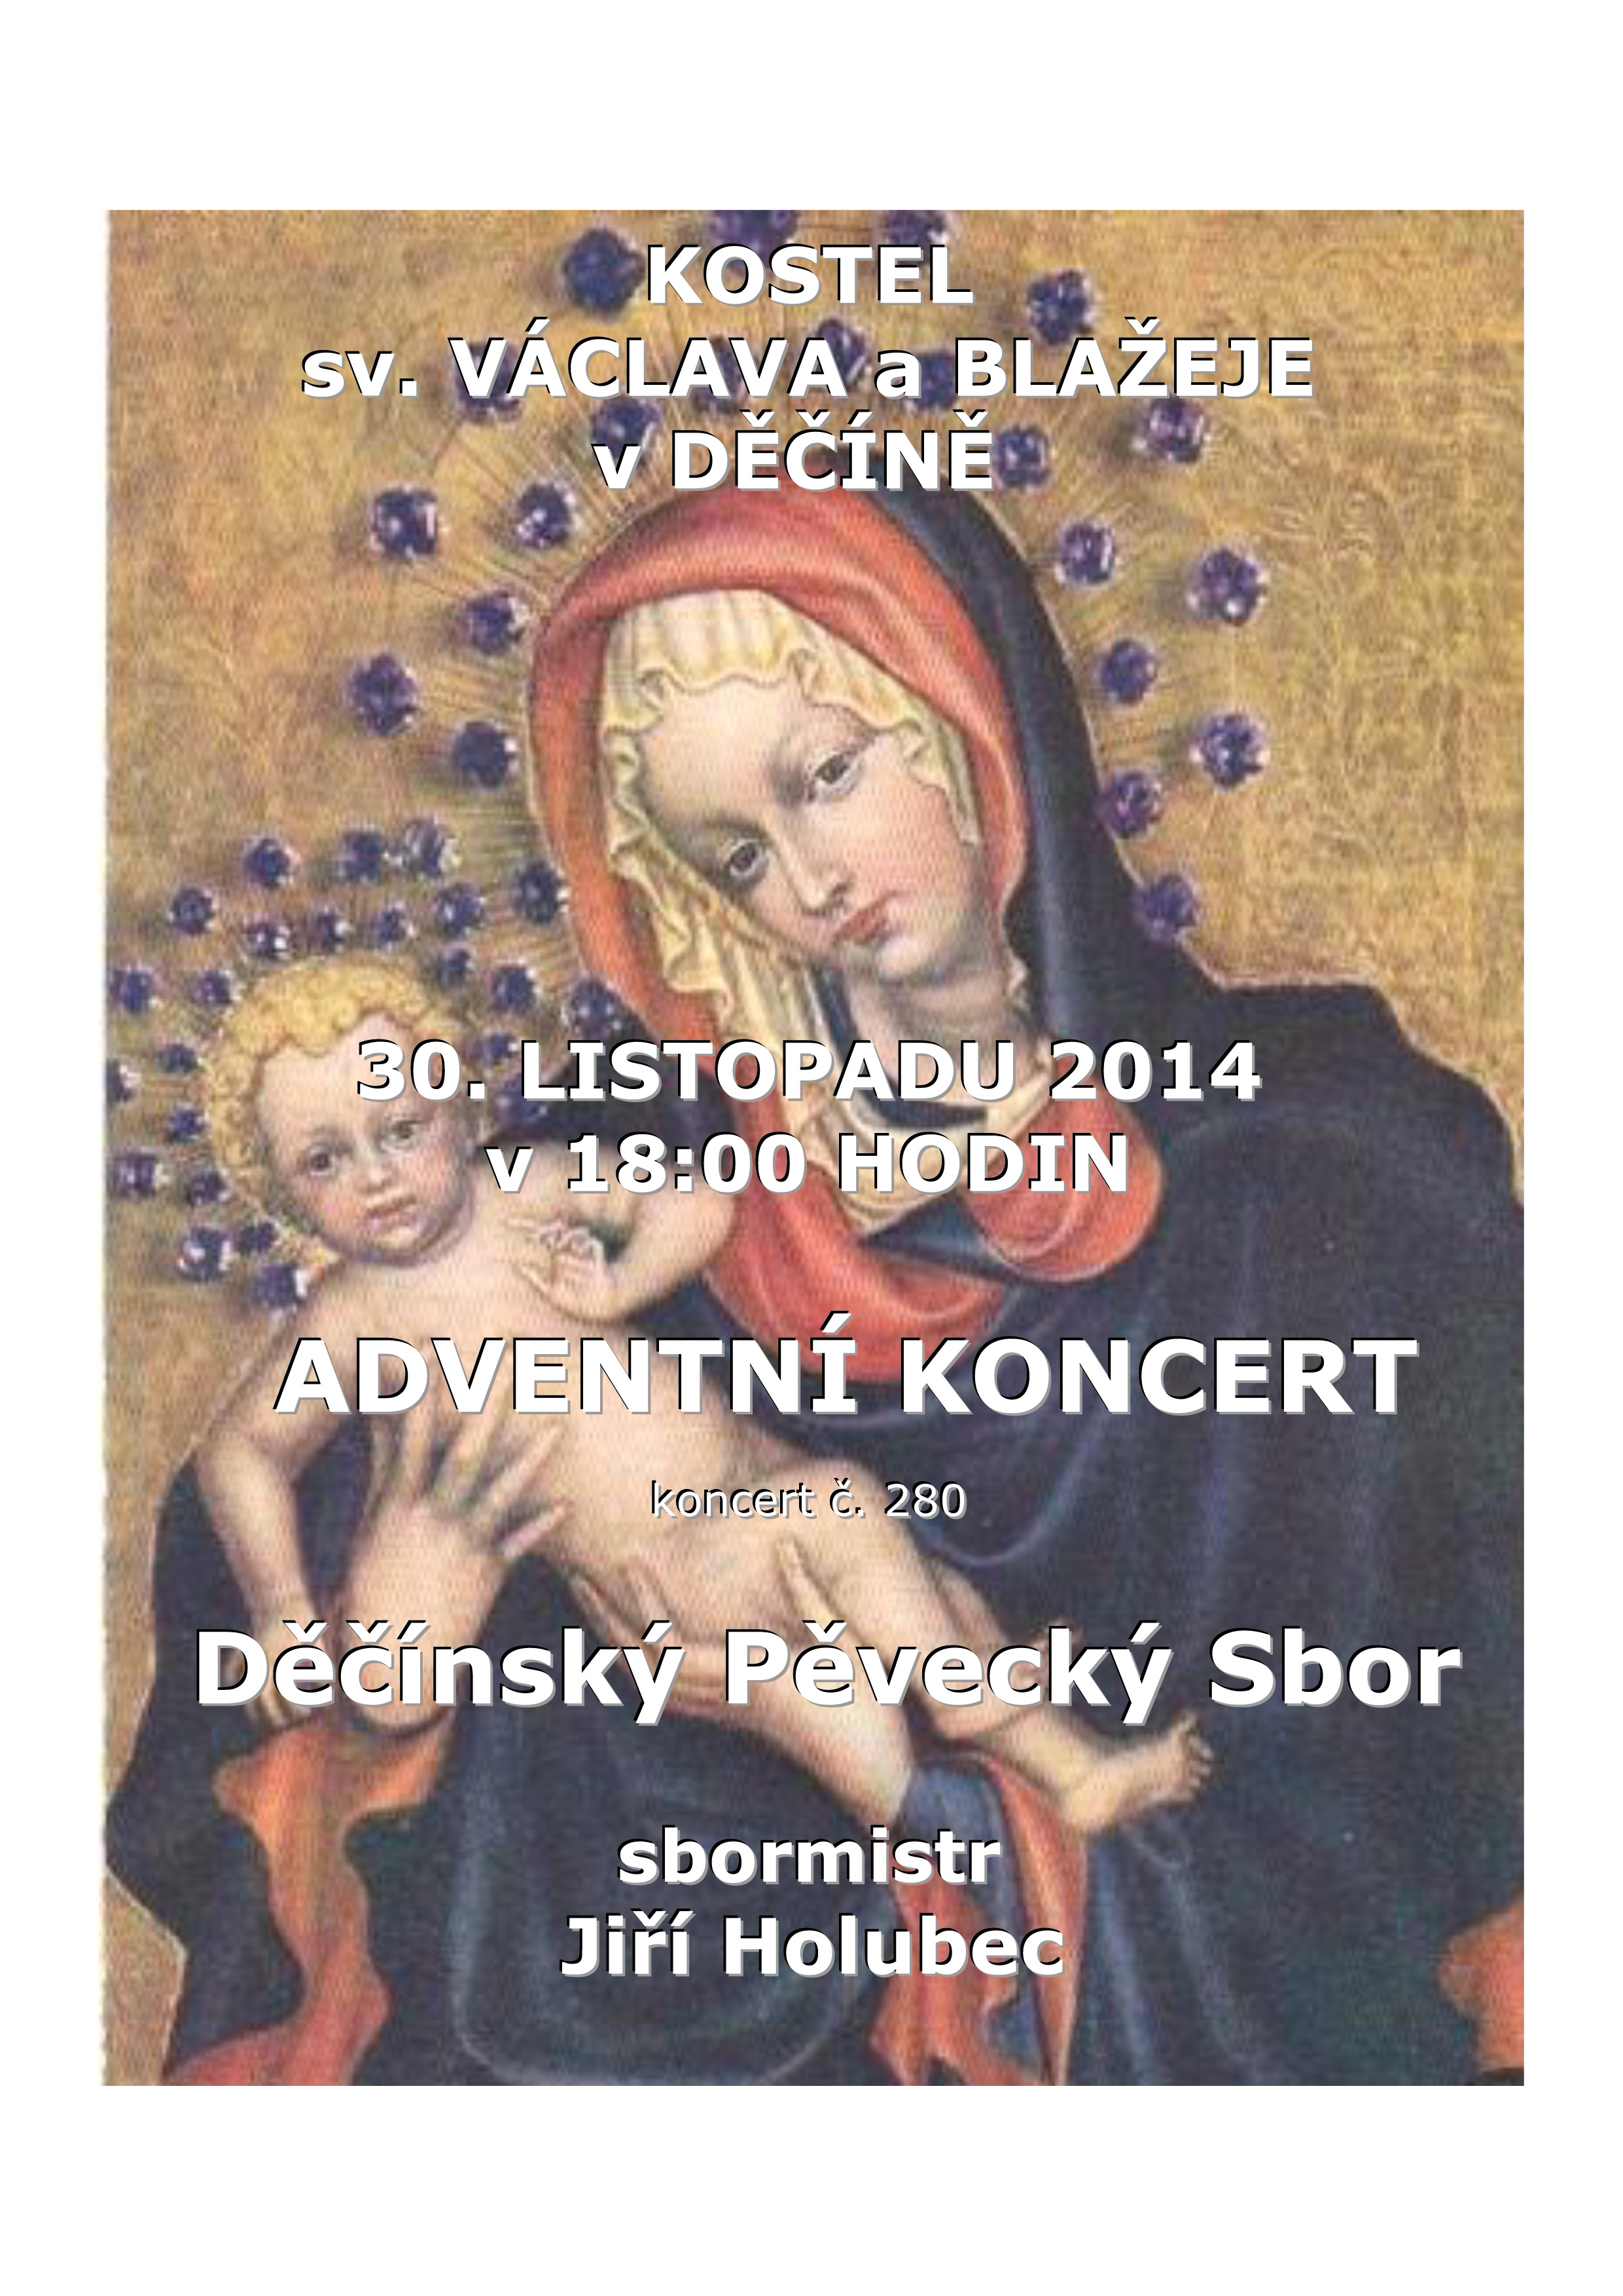 Plakát akce Adventní koncert